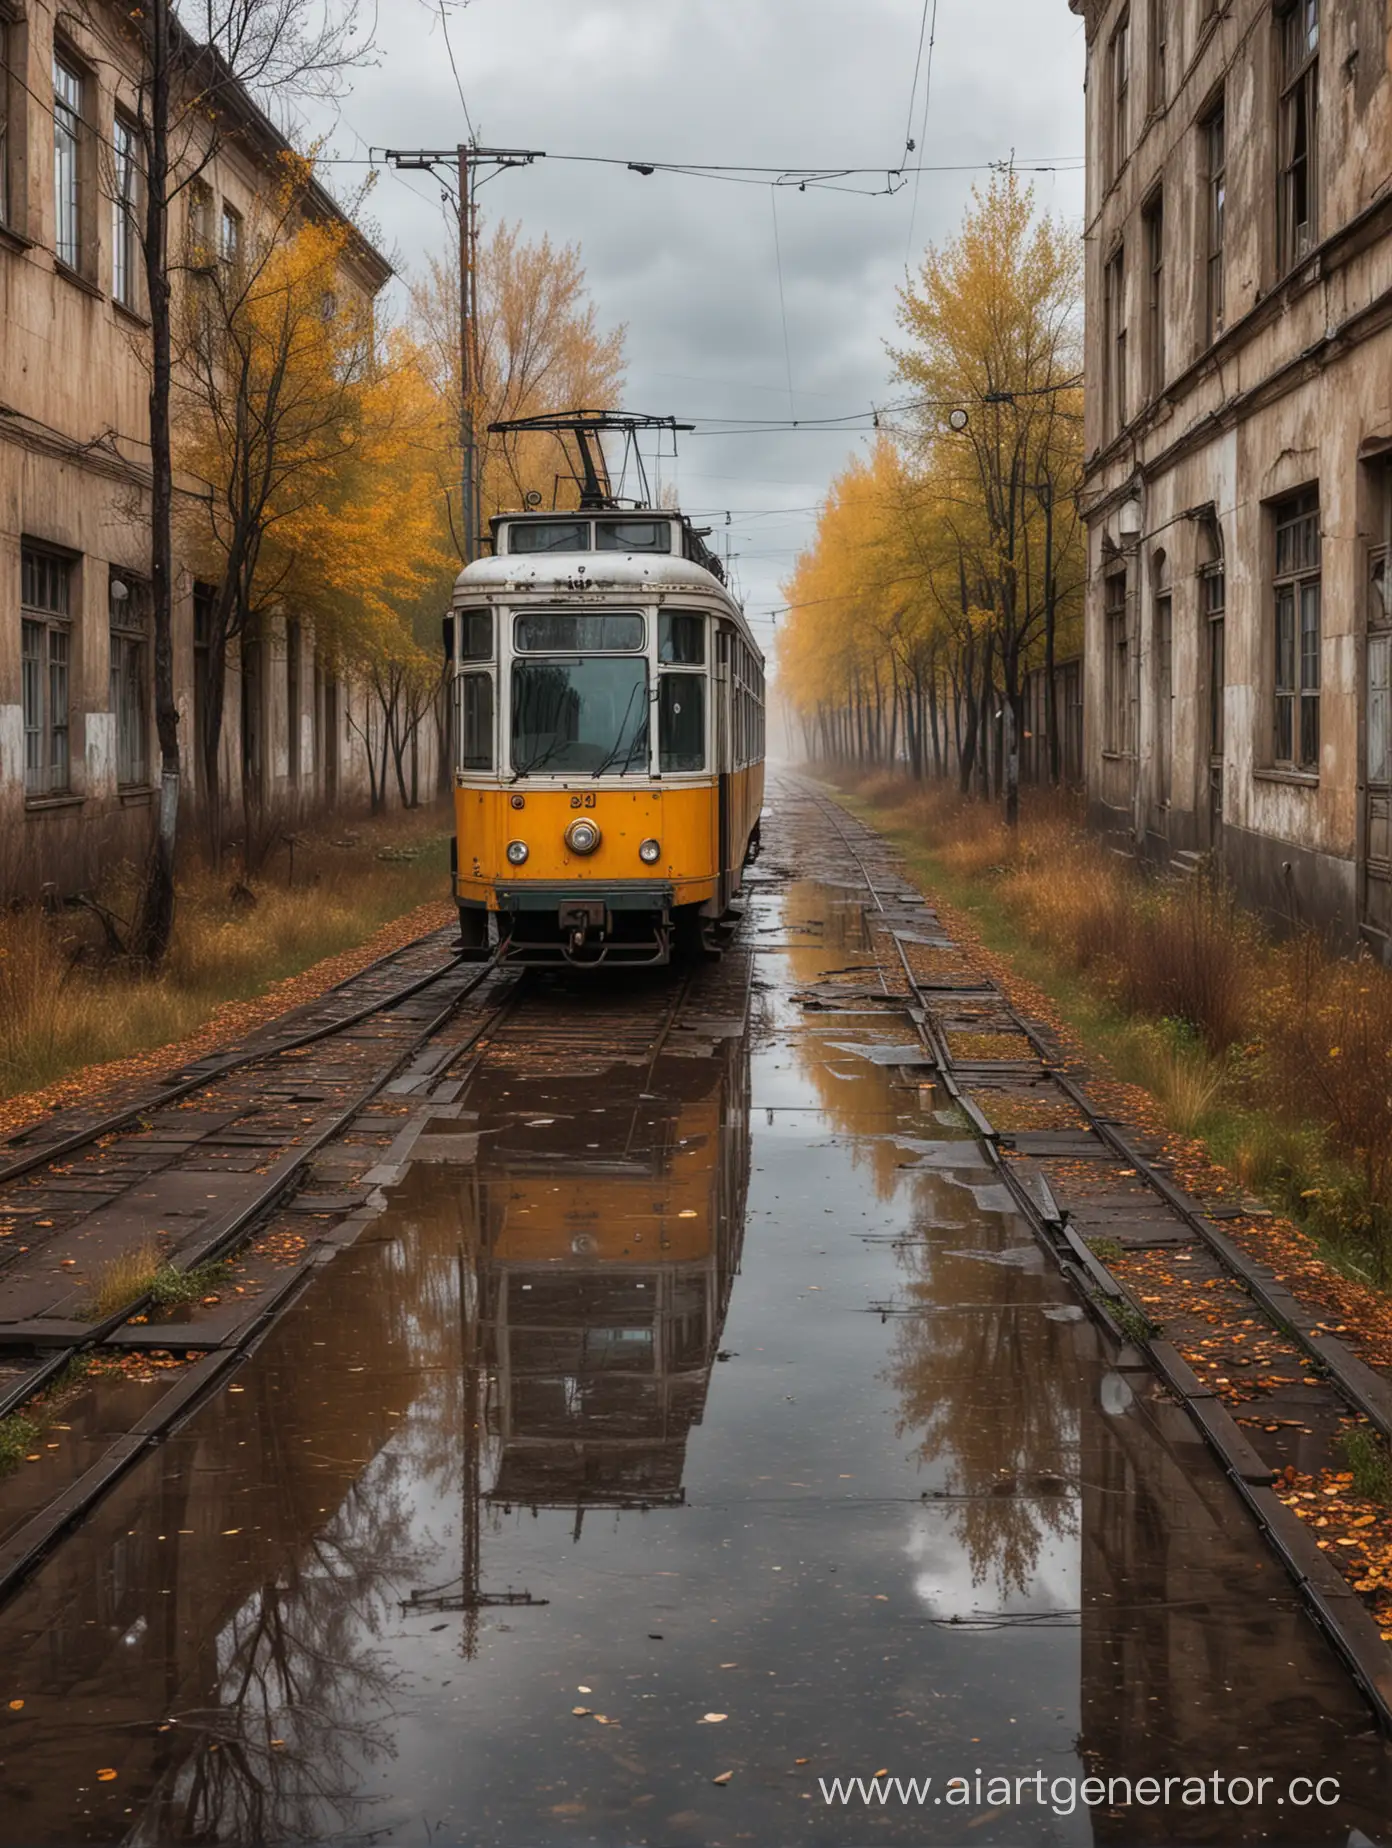 Заброшенный трамвай в городе русском стоит в заброшенном русском двору осень дождь тучи серые 